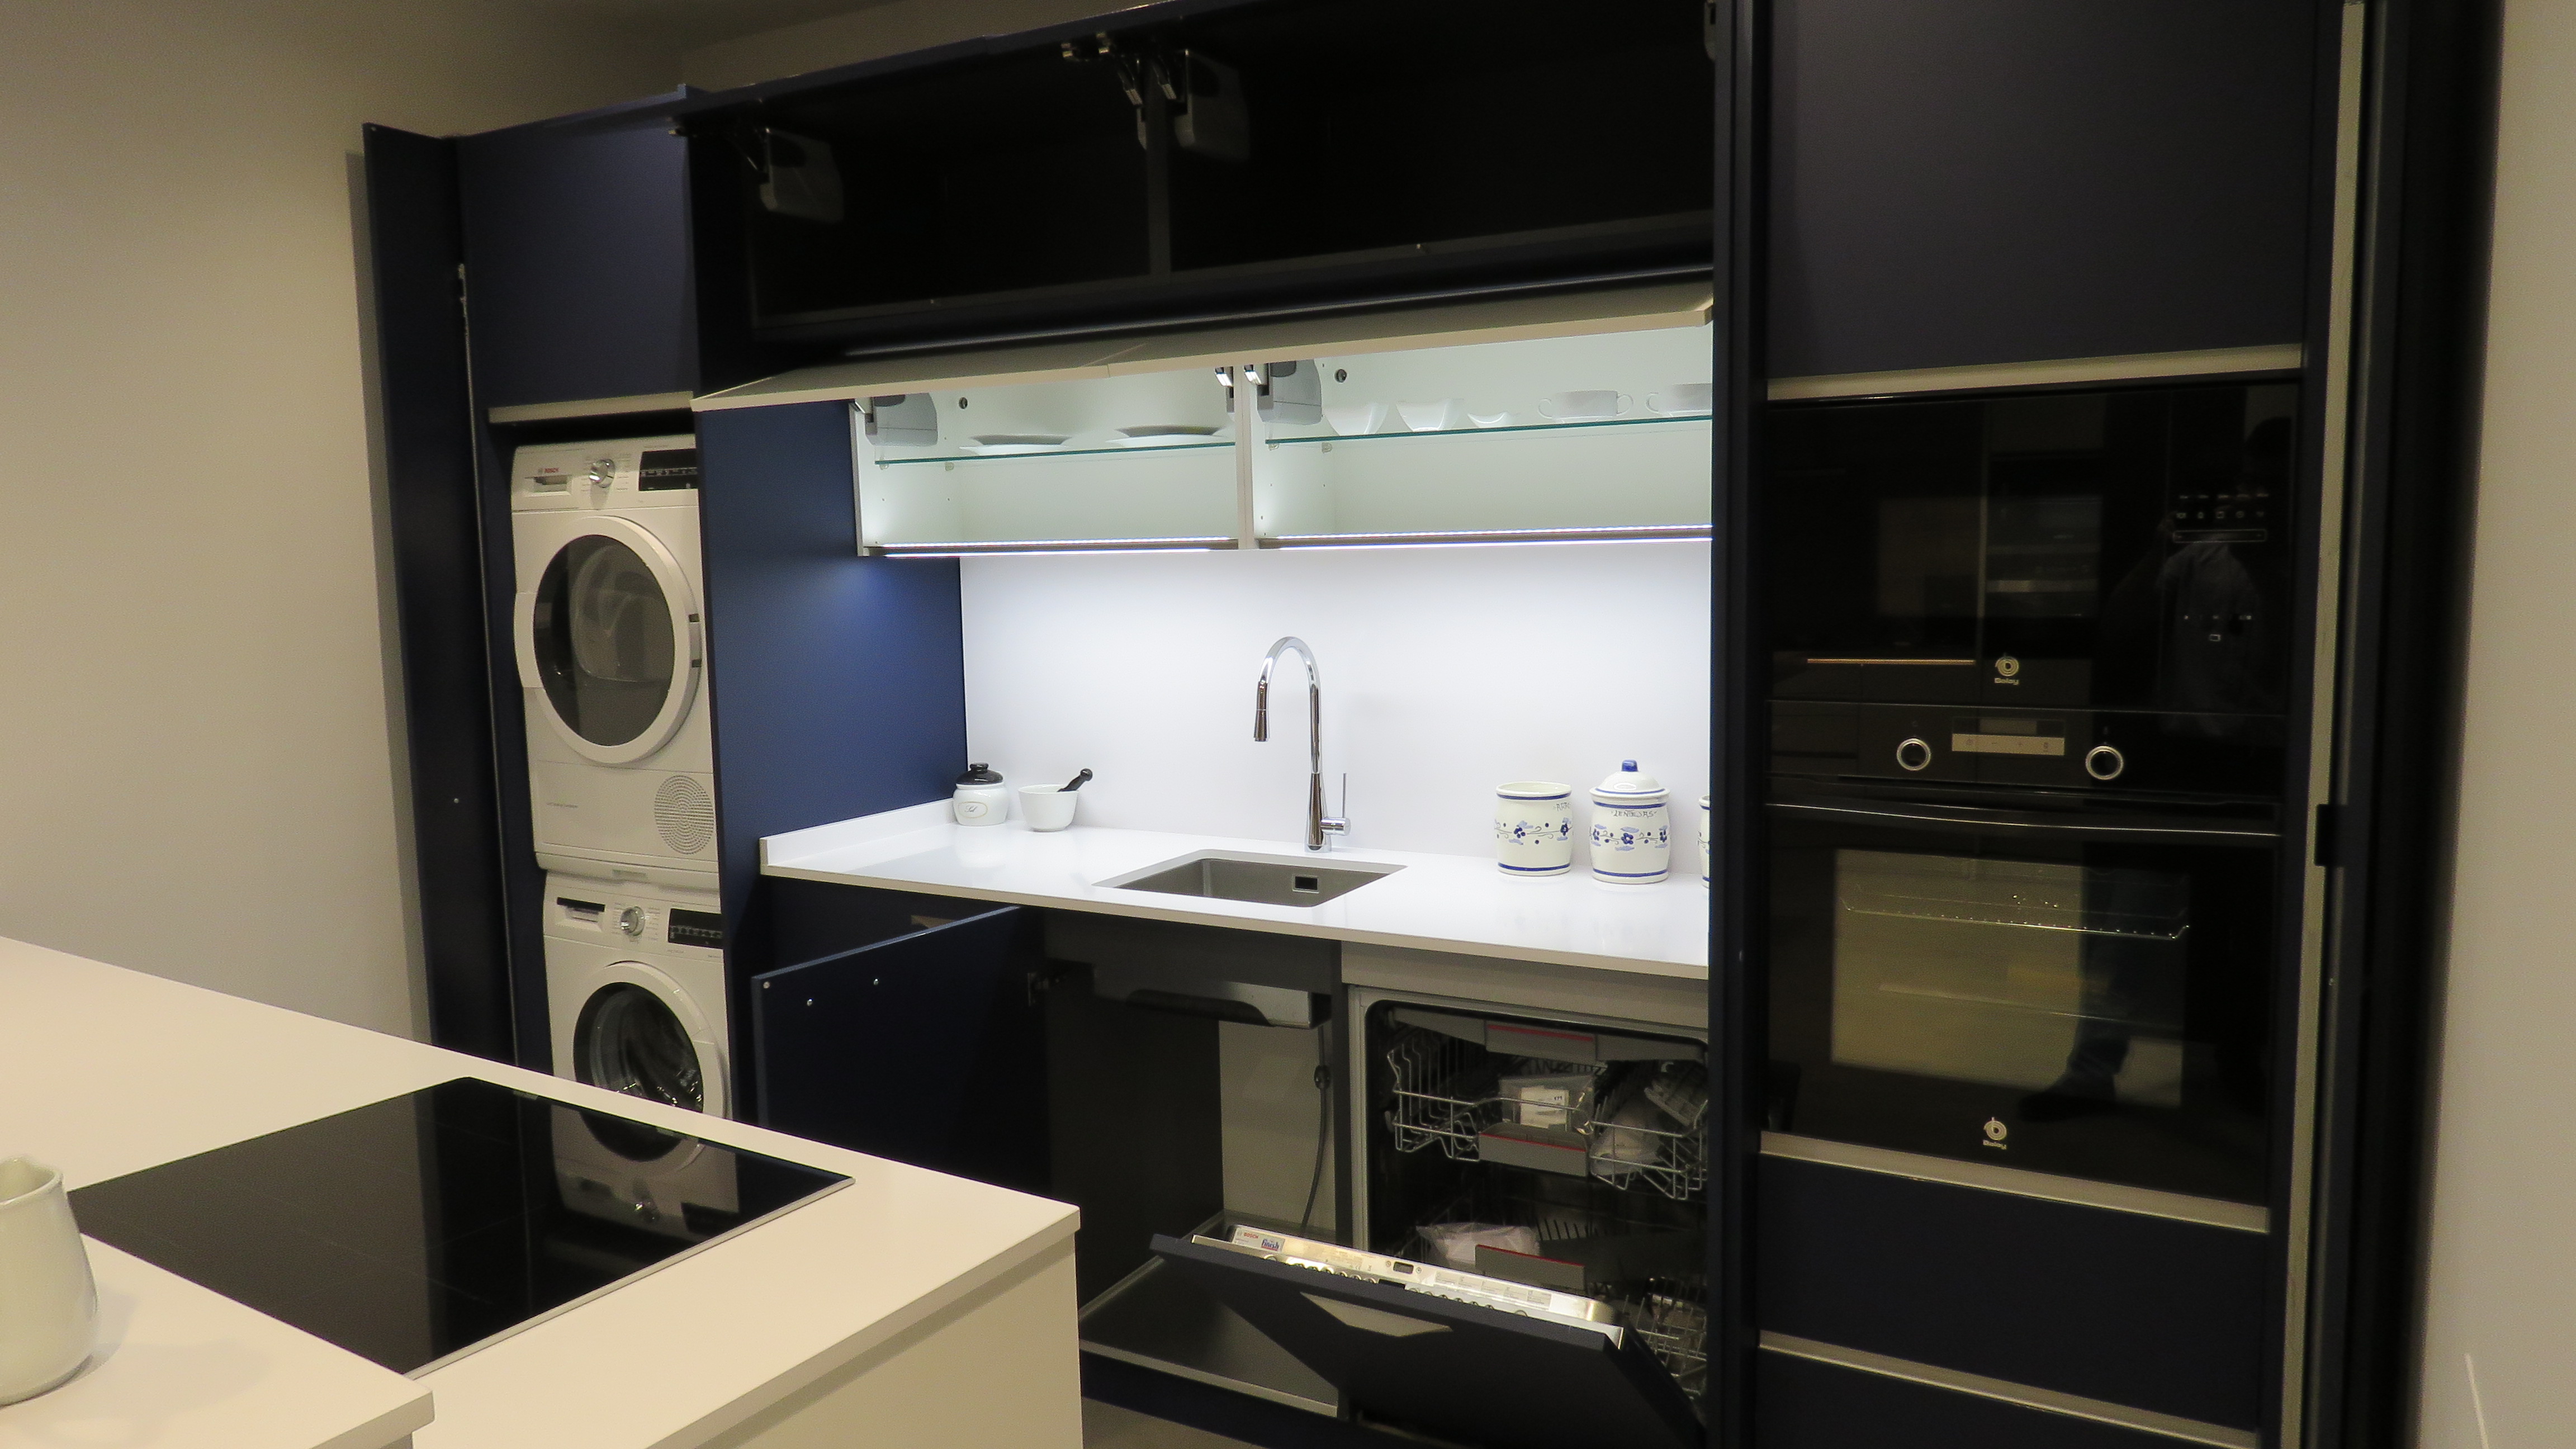 Electrodomésticos en la cocina: ¿integrados o vistos?